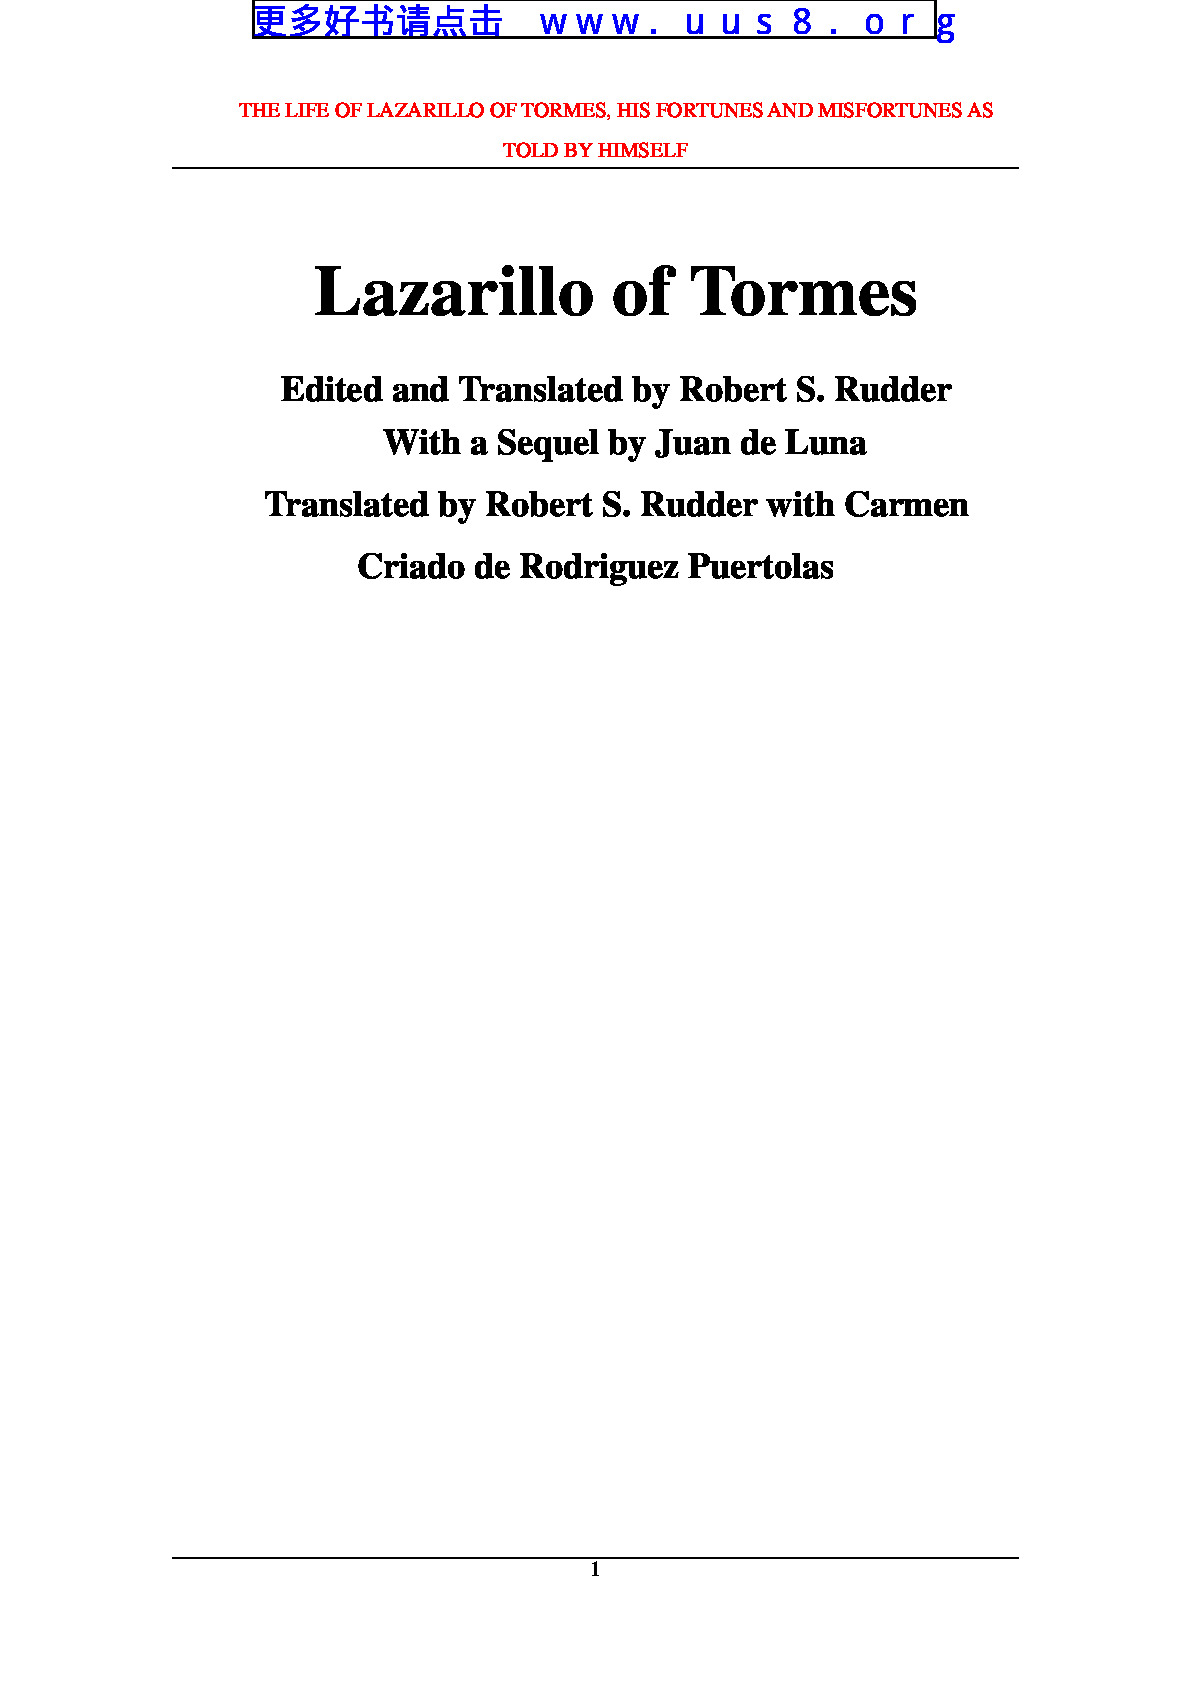 Lazarillo_of_Tormes(托姆斯的拉托里罗)